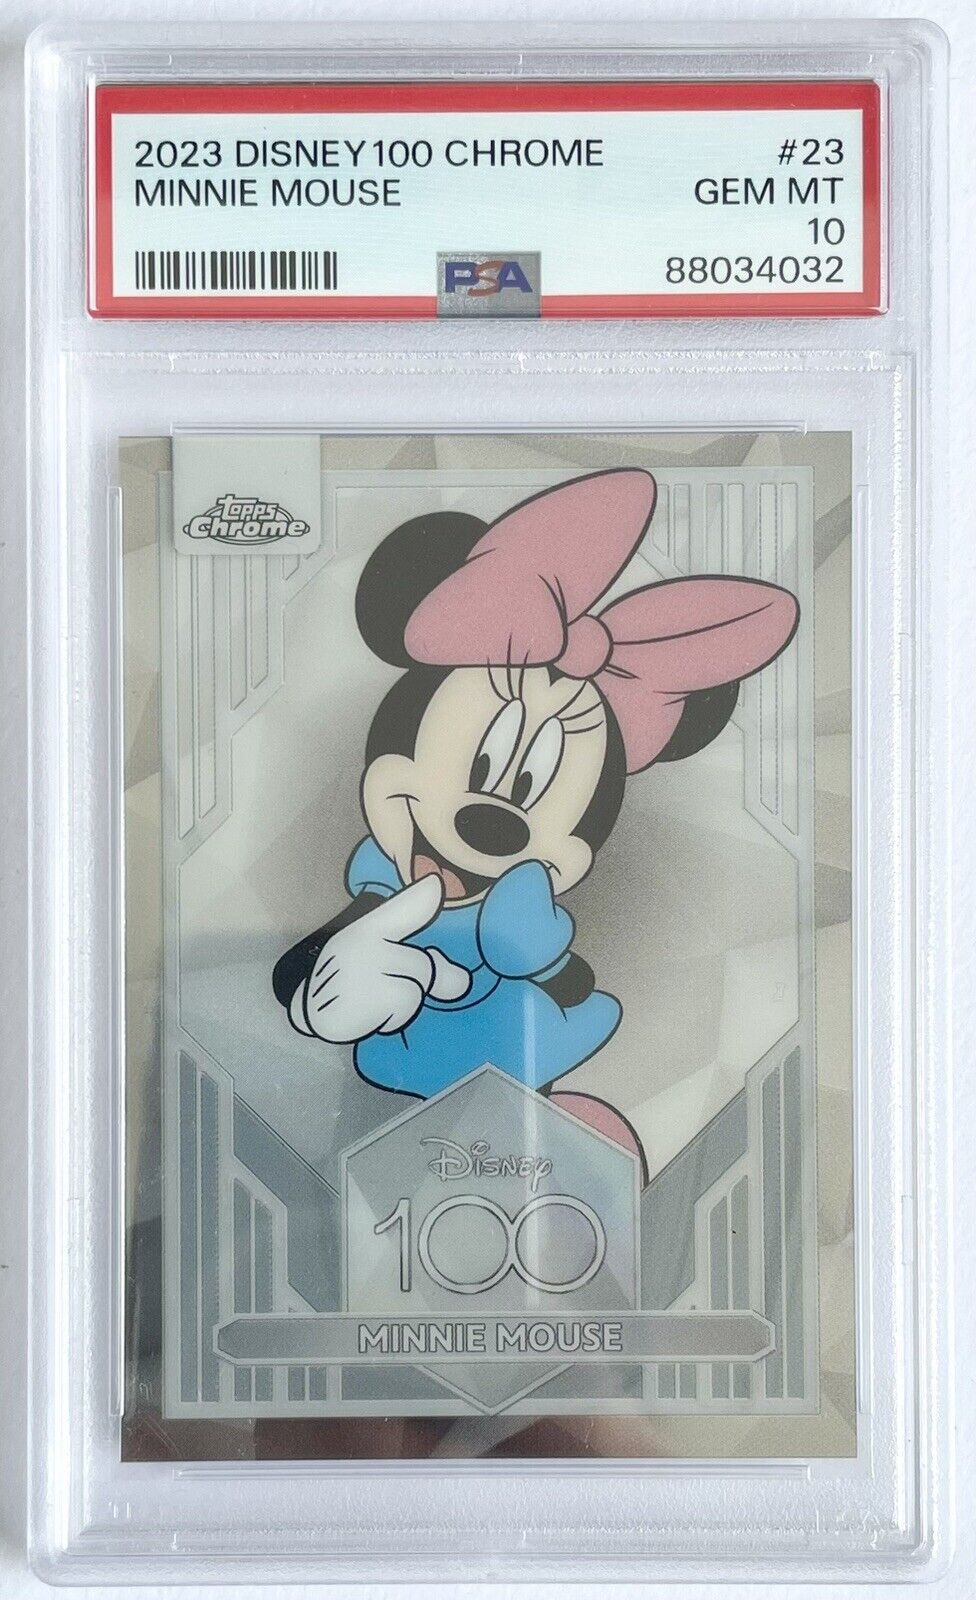 Topps Chrome Disney 100 - PSA 10 - Minnie Mouse